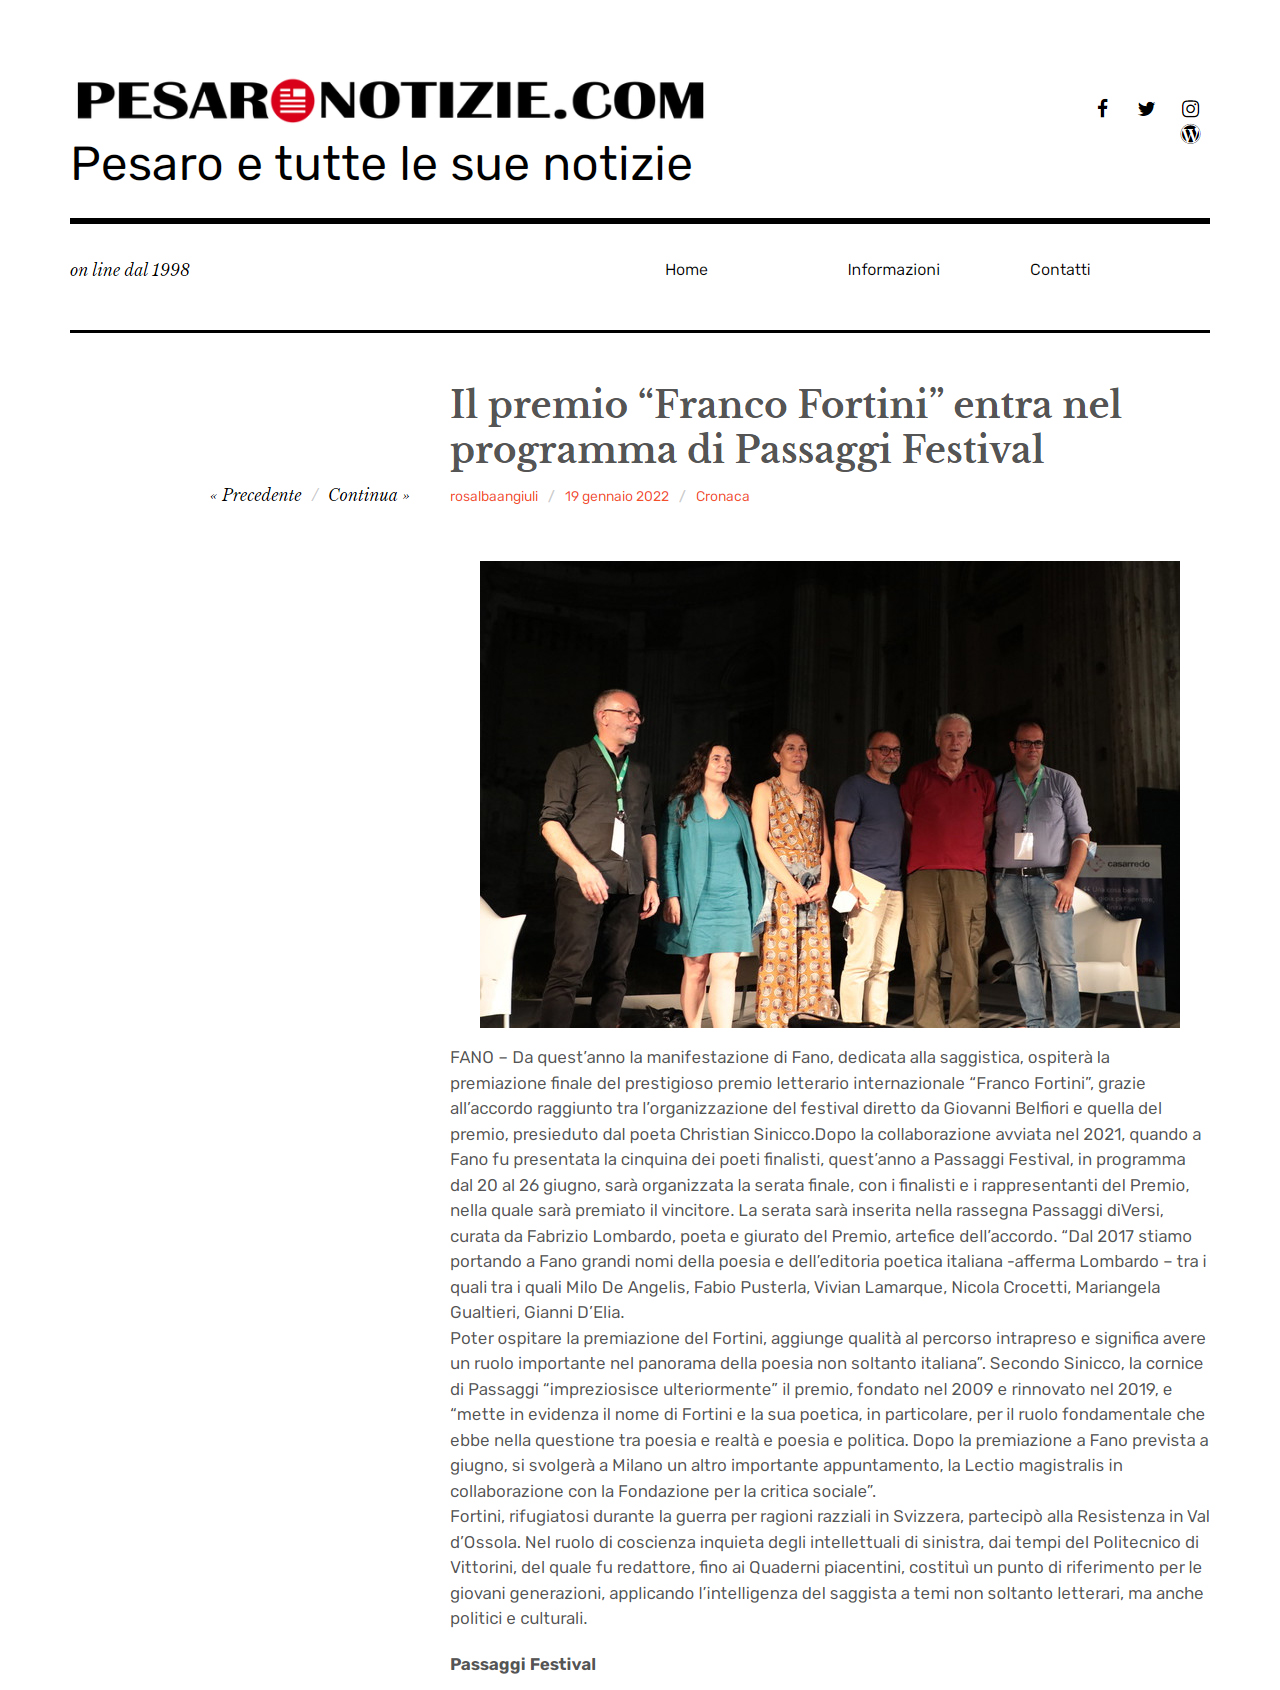 2022-01-19-pesaronotizie-il-premio-franco-fortini-entra-nel-programma-di-passaggi-festival